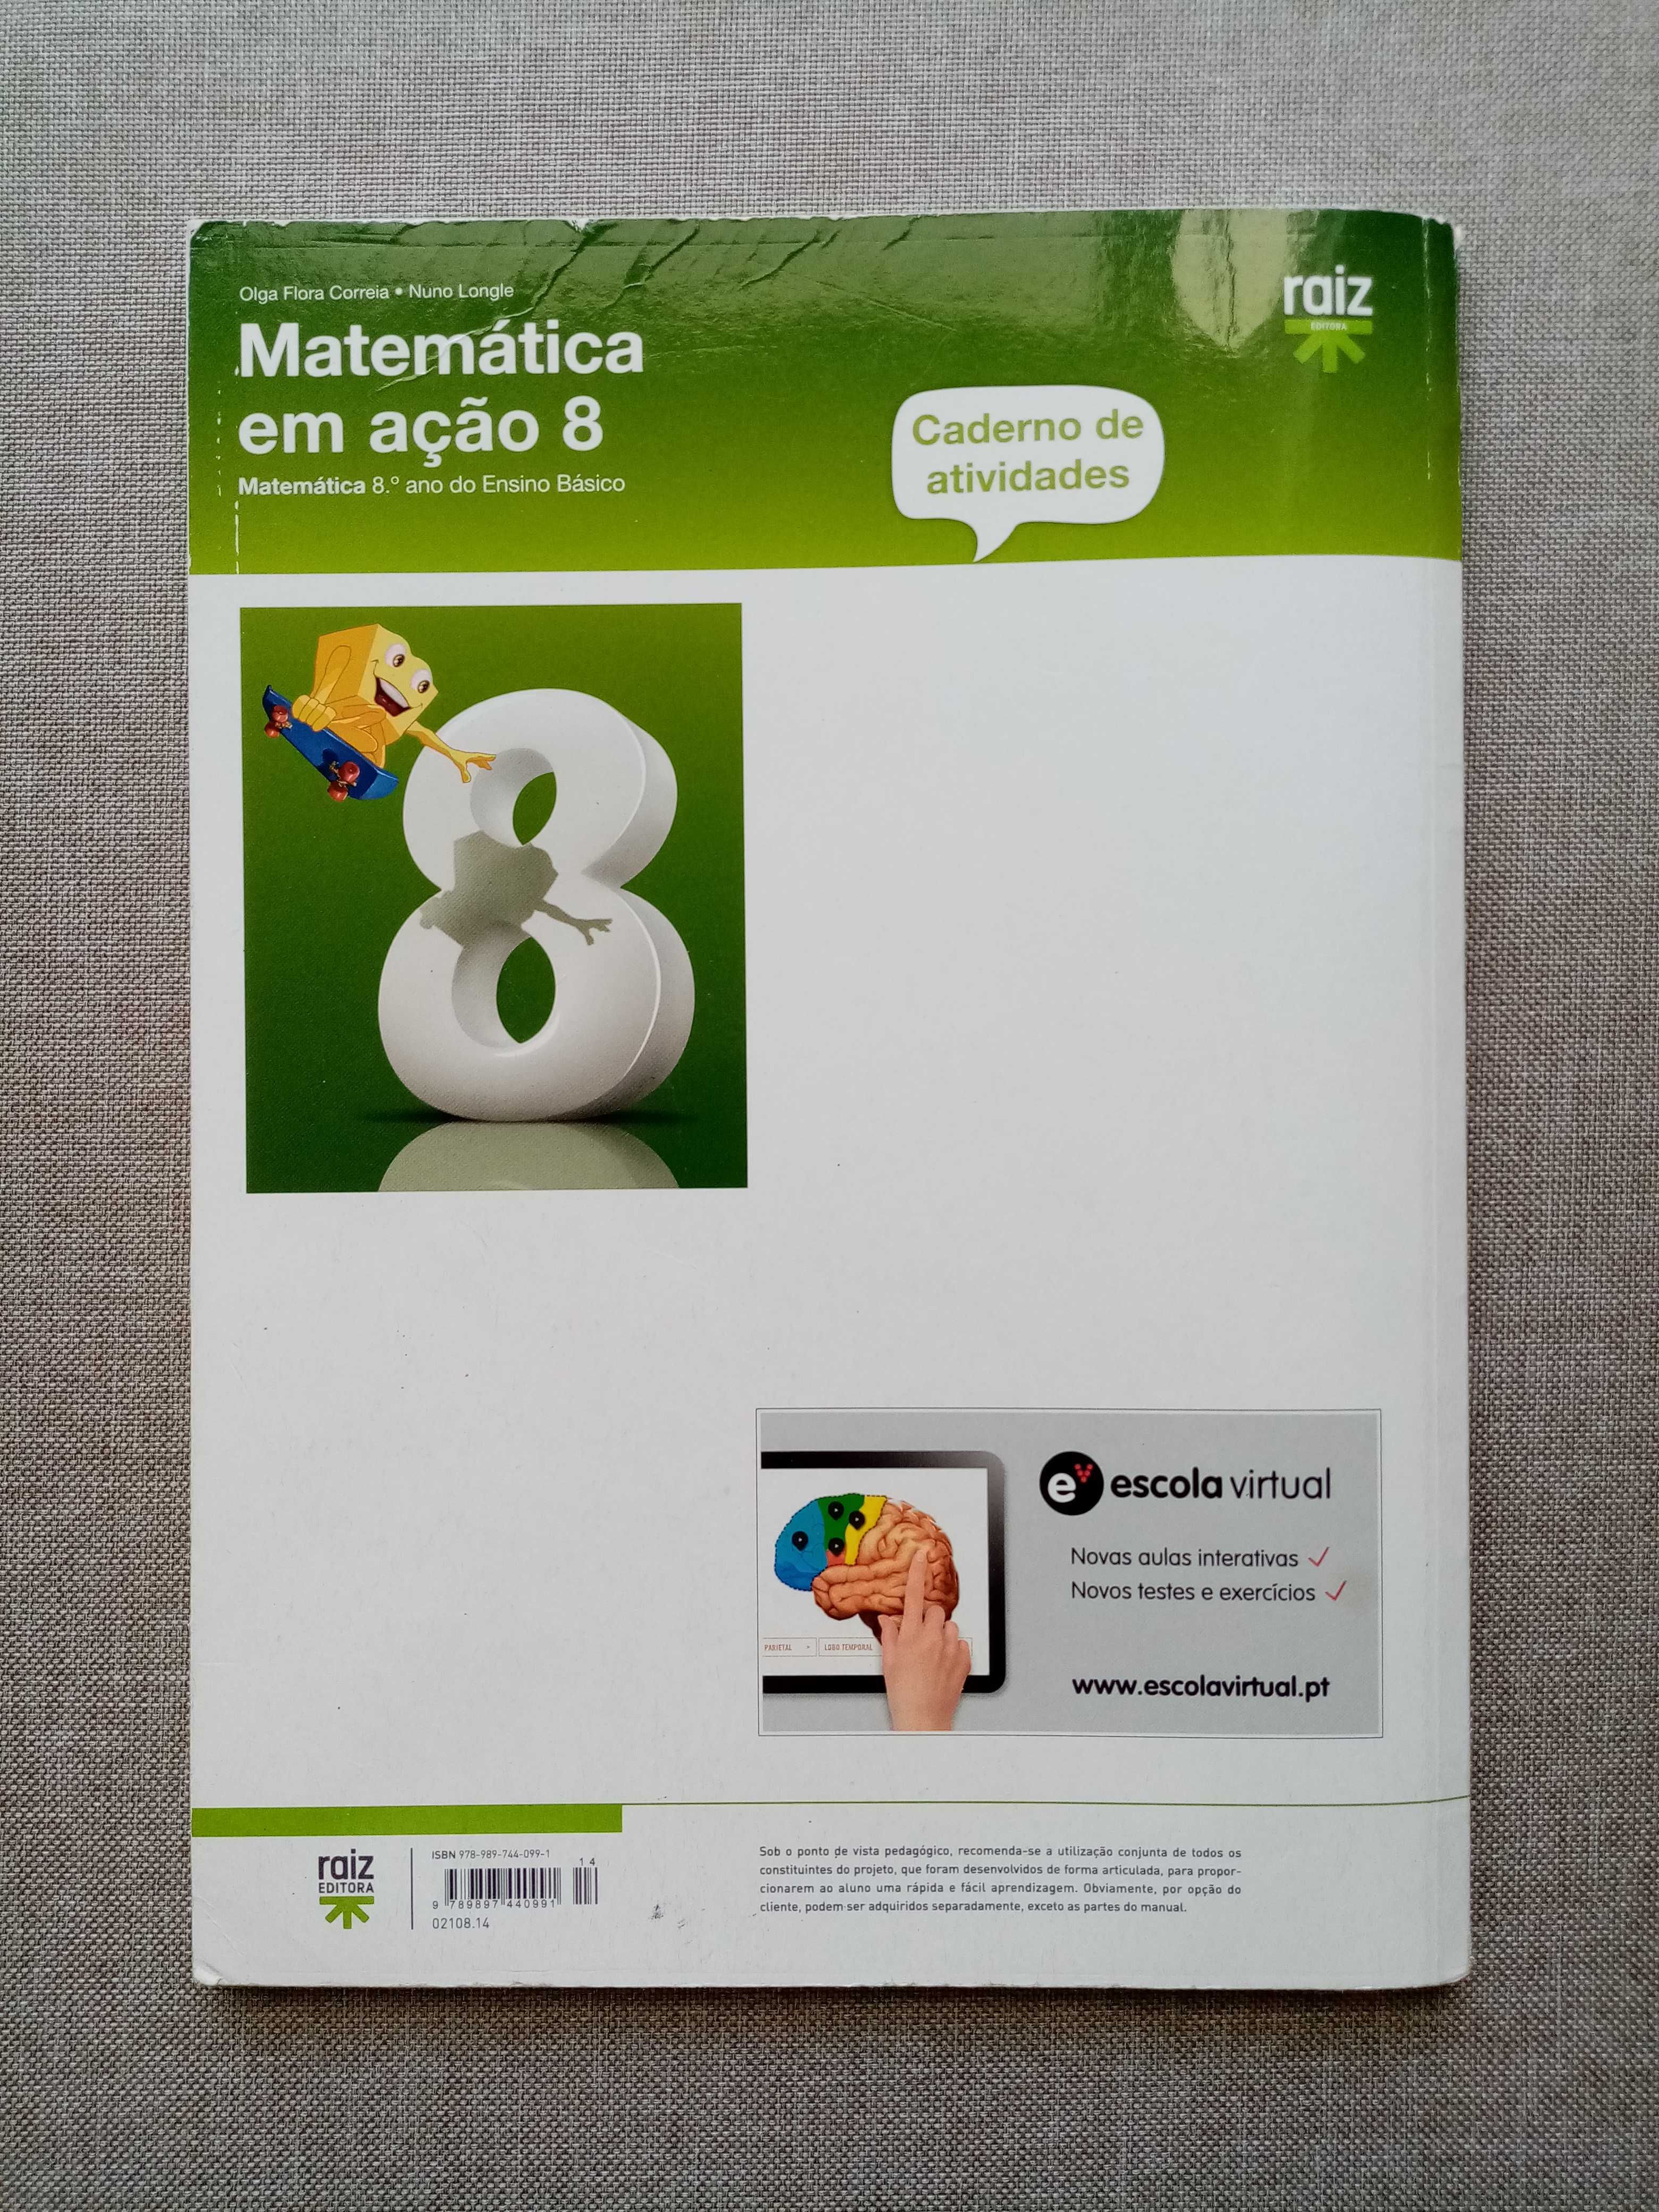 Caderno de atividades- "Matemática em ação 8"